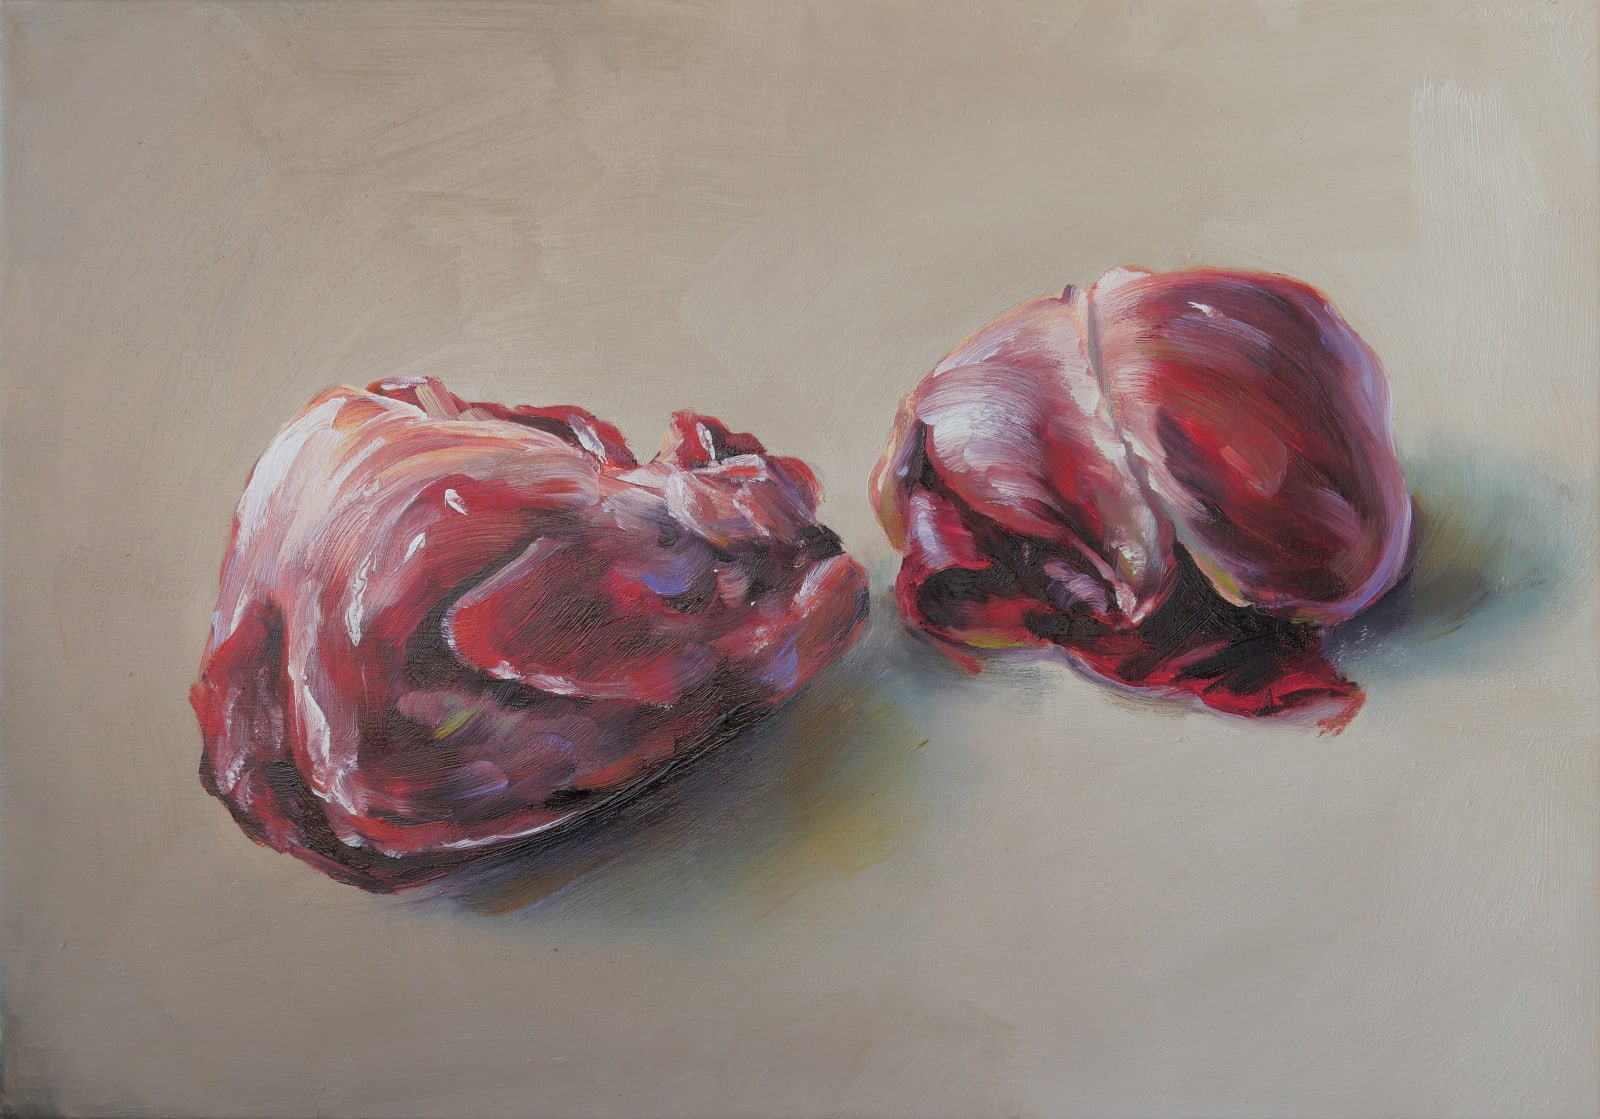 Cornelius Völker, Zwei Herzen (Two Hearts), 2021 | Hosfelt Gallery